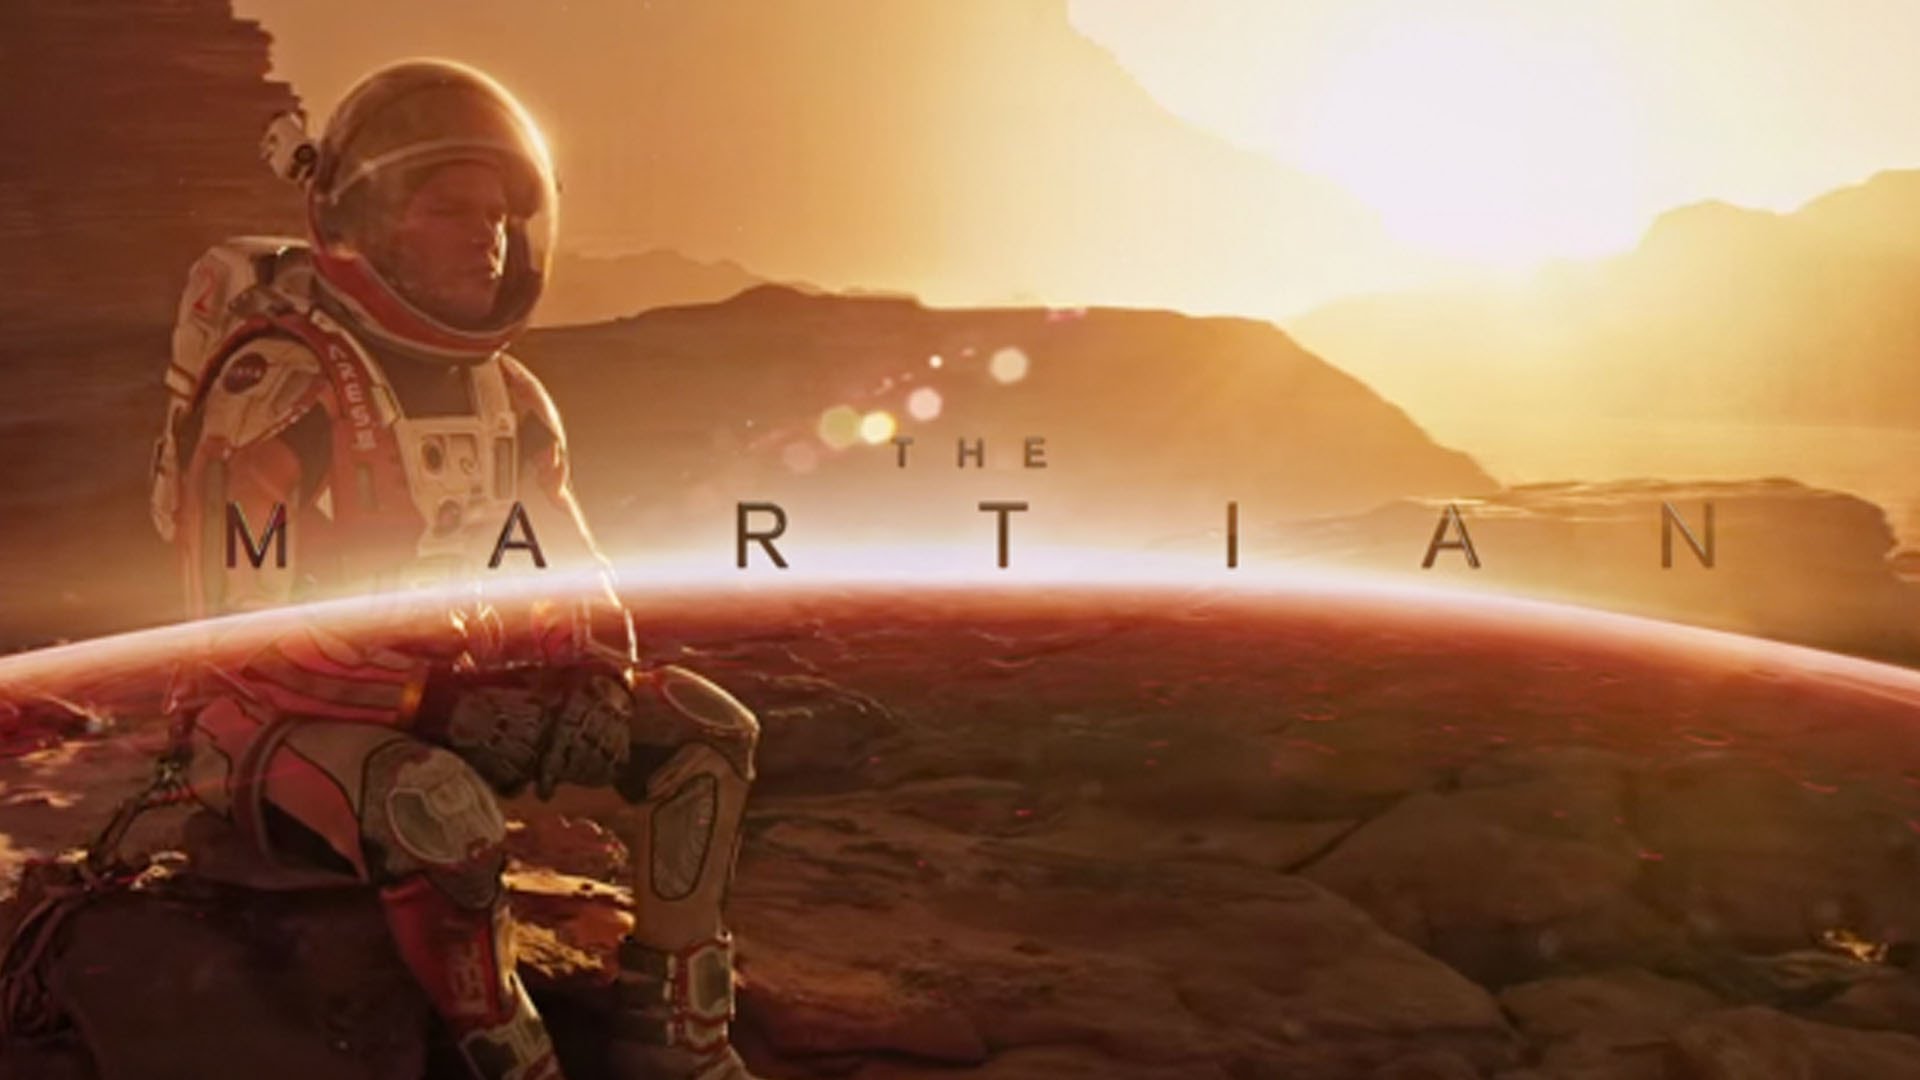 The Martian 4K 2015 big poster